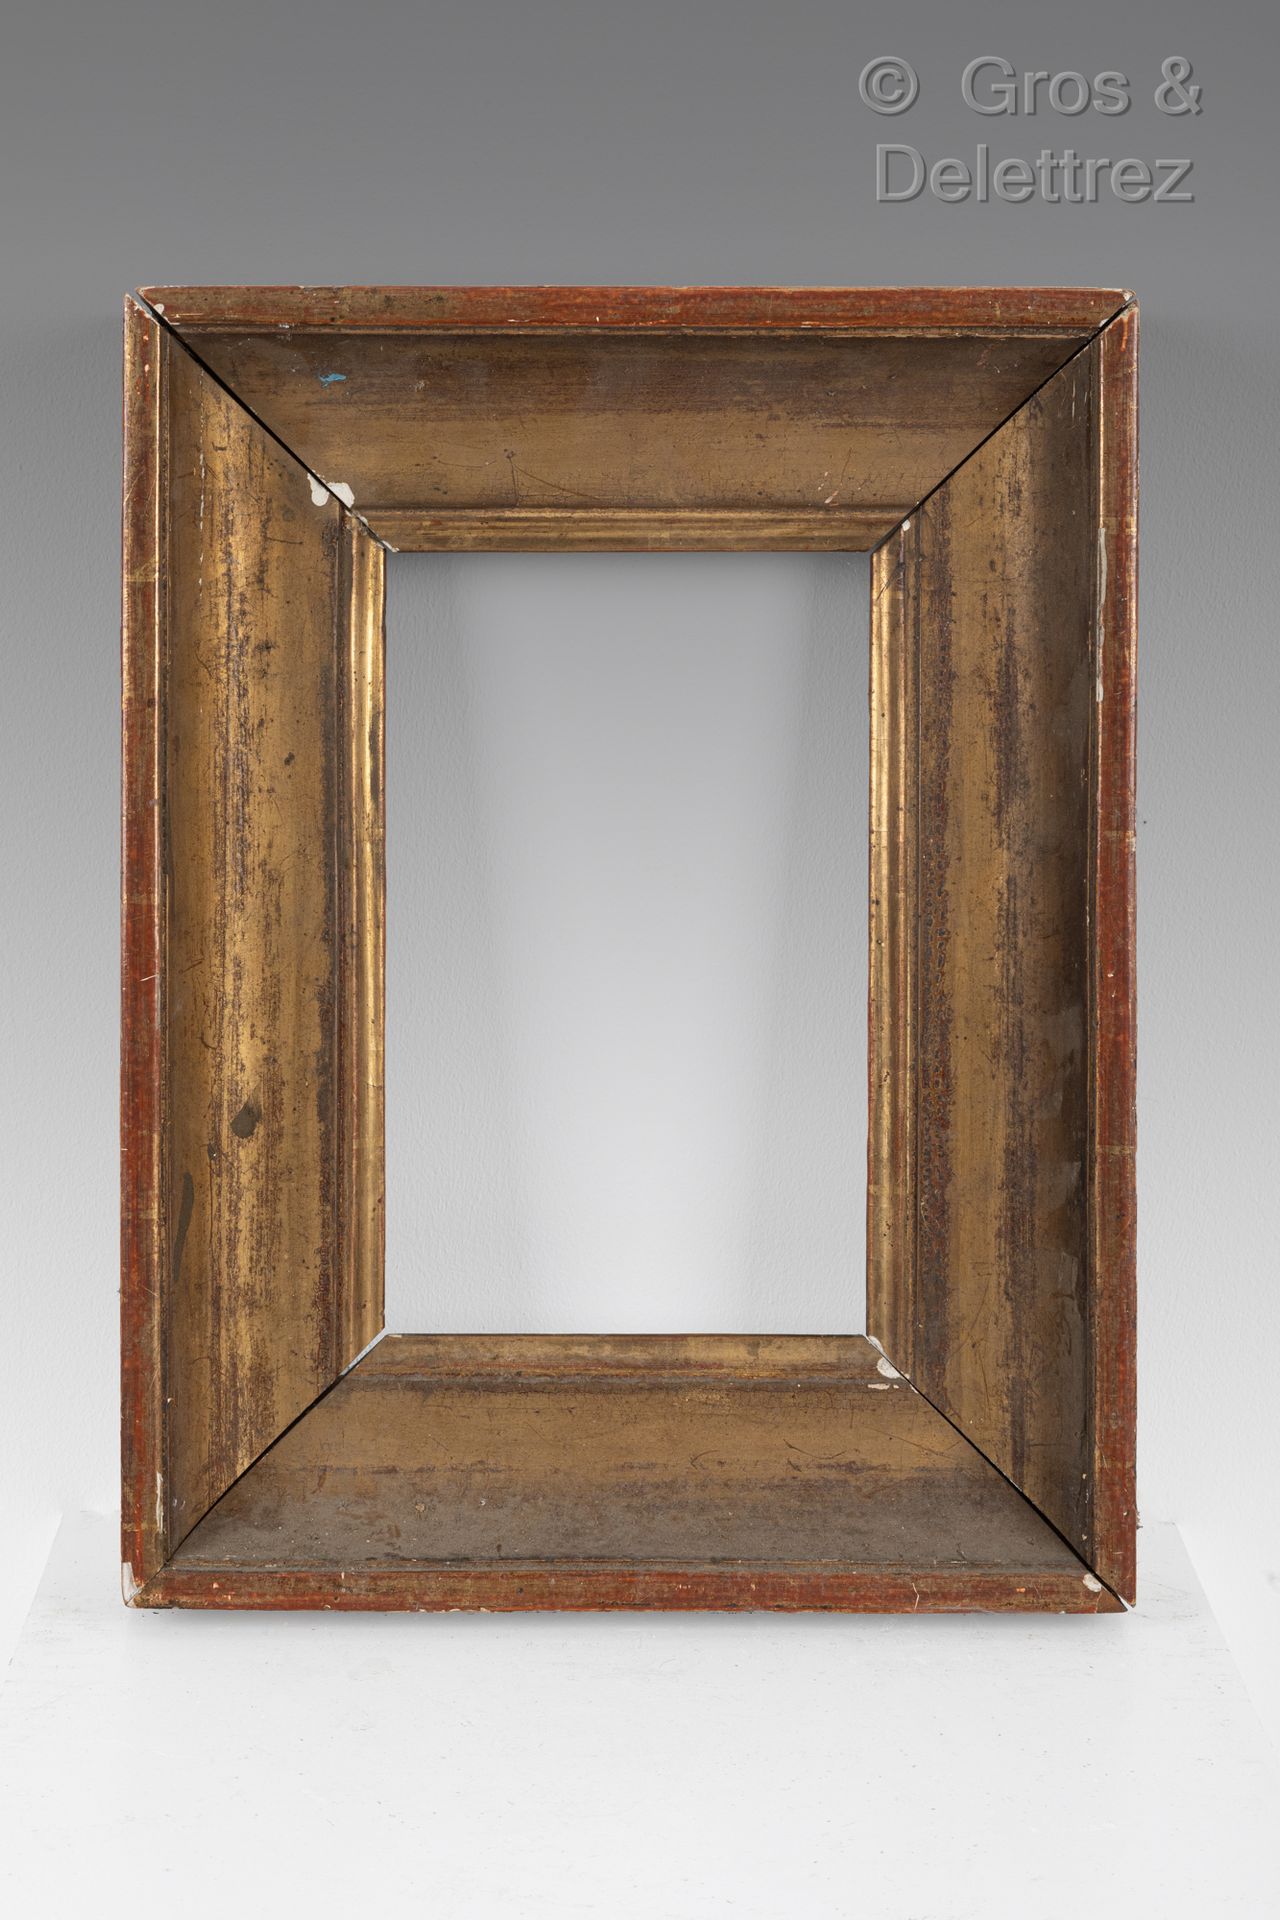 Null Gorge en bois mouluré et doré.

Époque XIXe siècle

12,2 x 25 x 6,5 cm